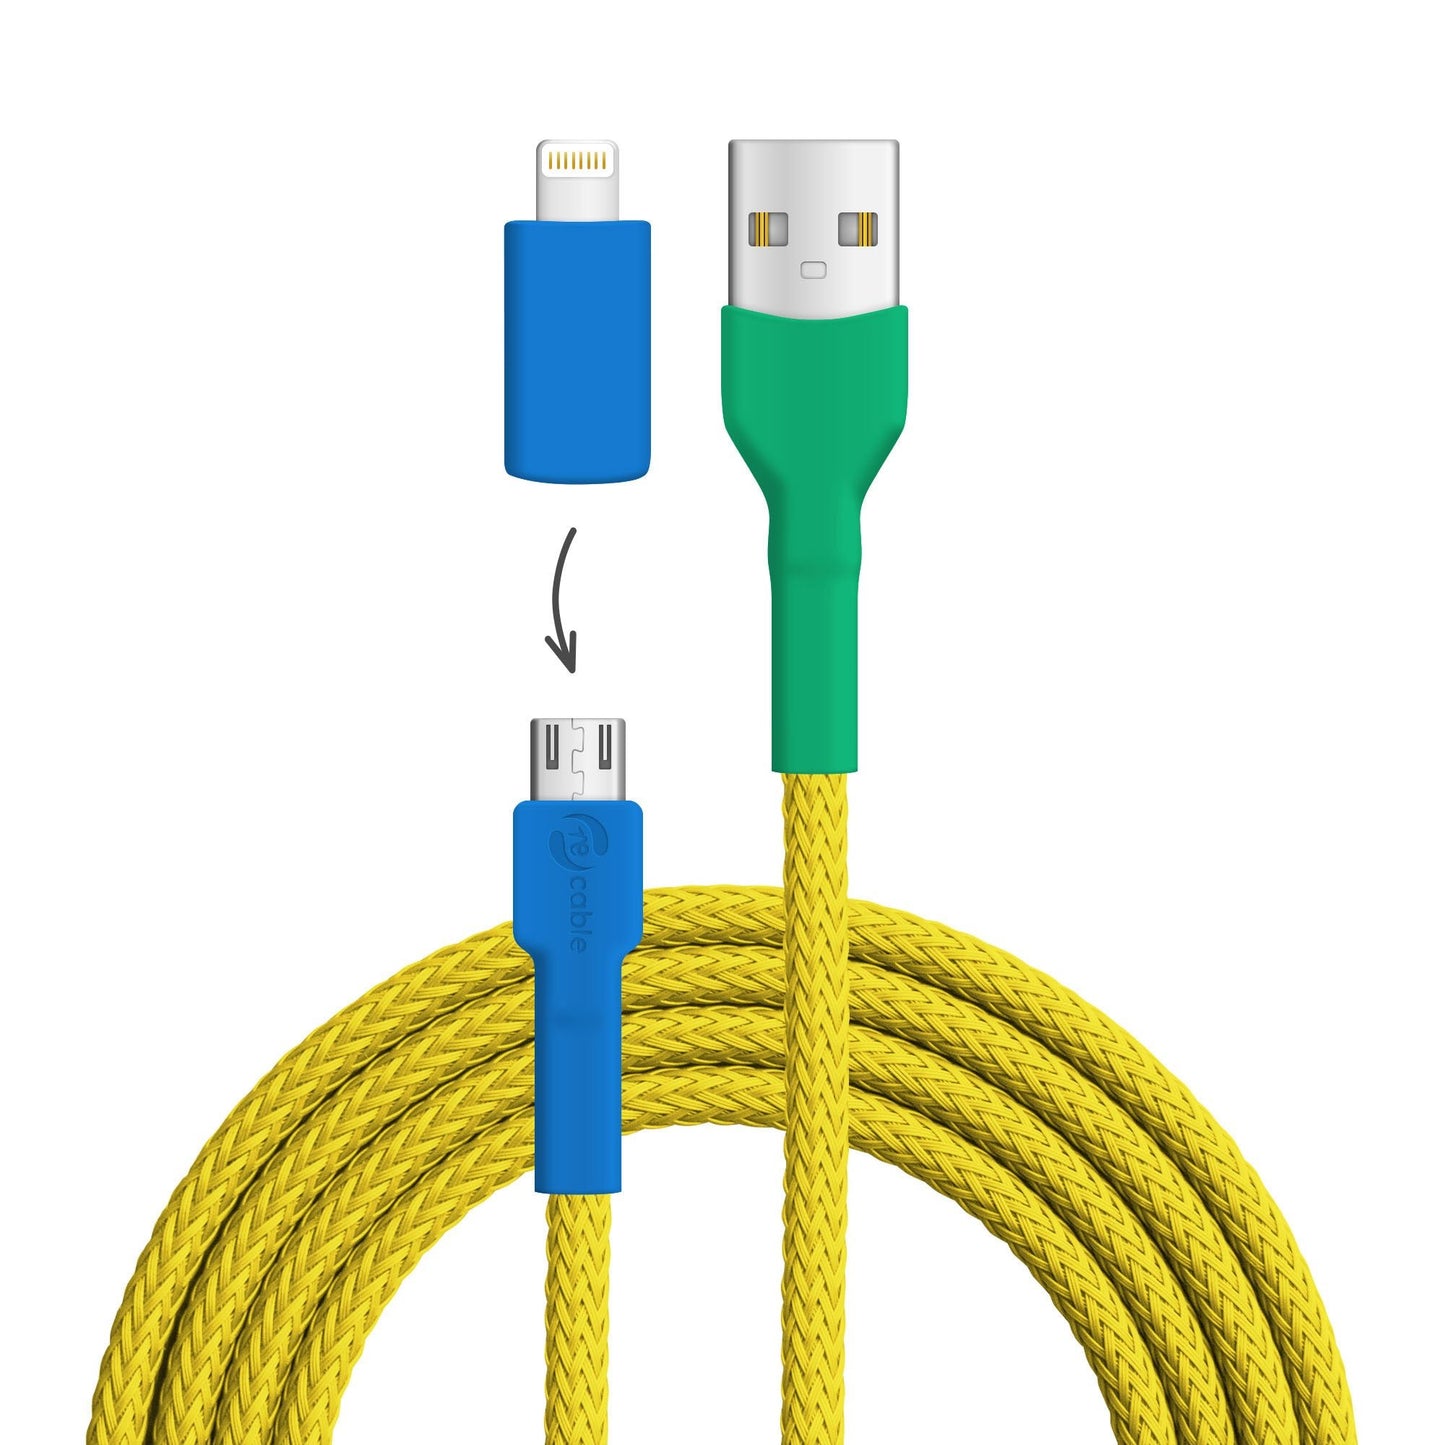 USB-Kabel, Design: Gelb­brustara, Anschlüsse: USB A auf Micro-USB mit Lightning Adapter (nicht verbunden)